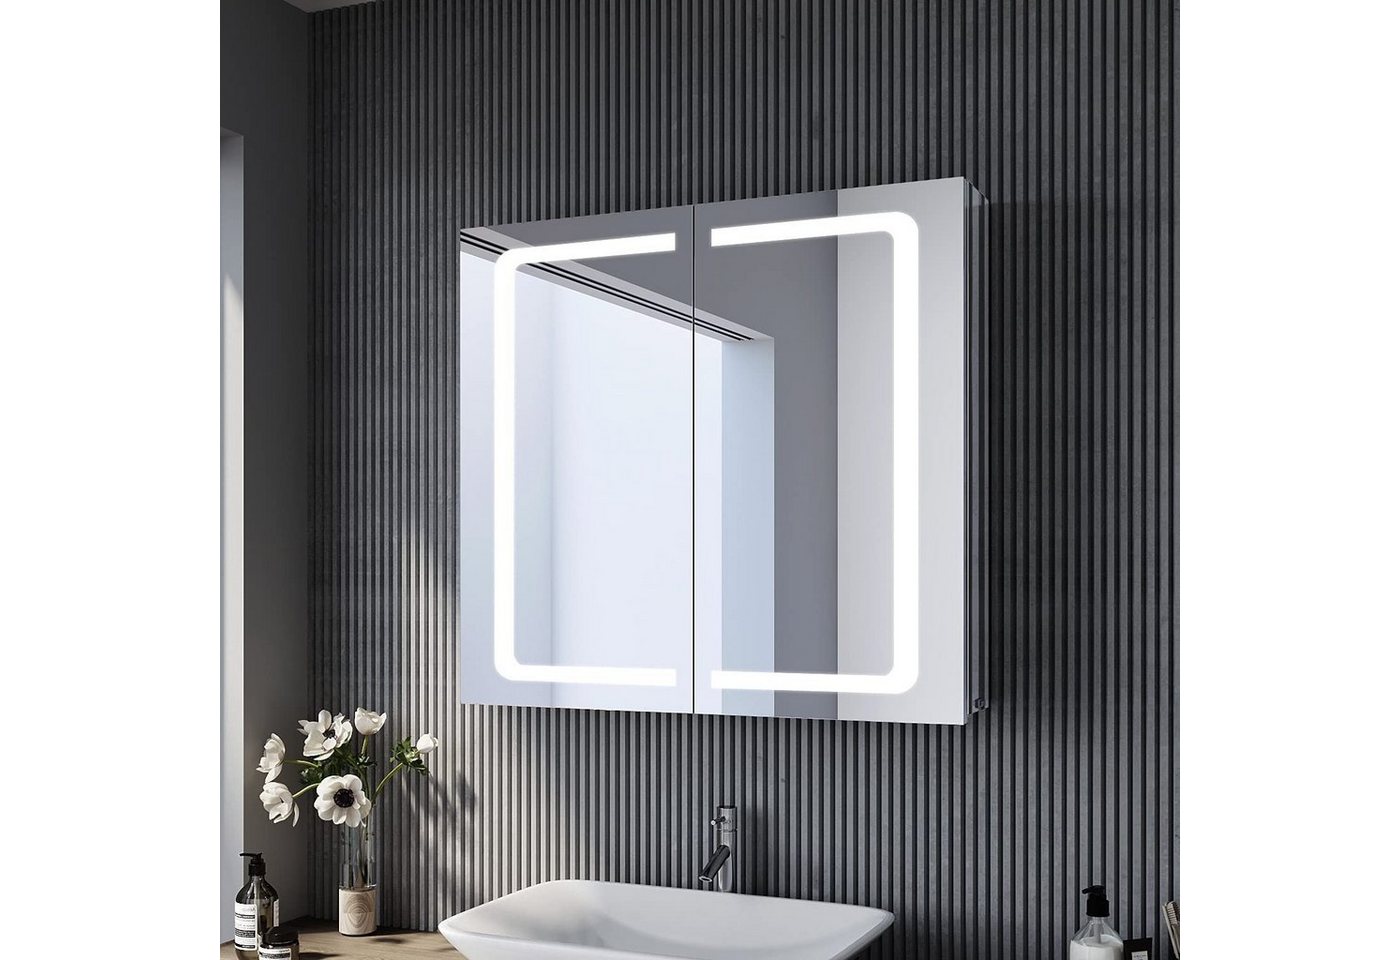 SONNI Spiegelschrank Spiegelschrank Badezimmer mit Beleuchtung 70x65cm Edelstahl mit Steckdose Kippschalter Kabelloses Scharnier Design von SONNI